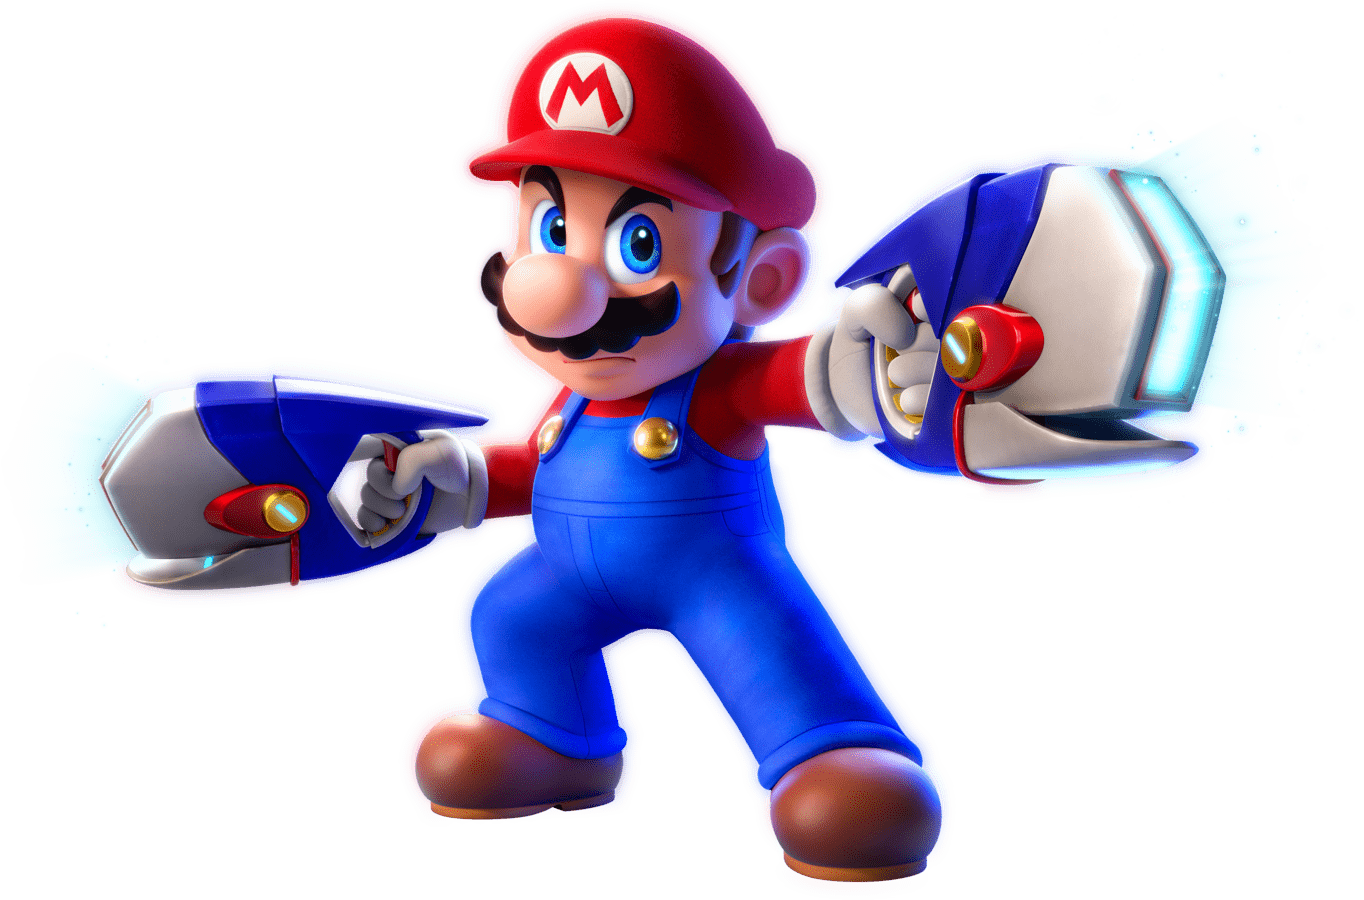 Mario + Rabbids Kingdom Battle - Super Mario Wiki, the Mario encyclopedia